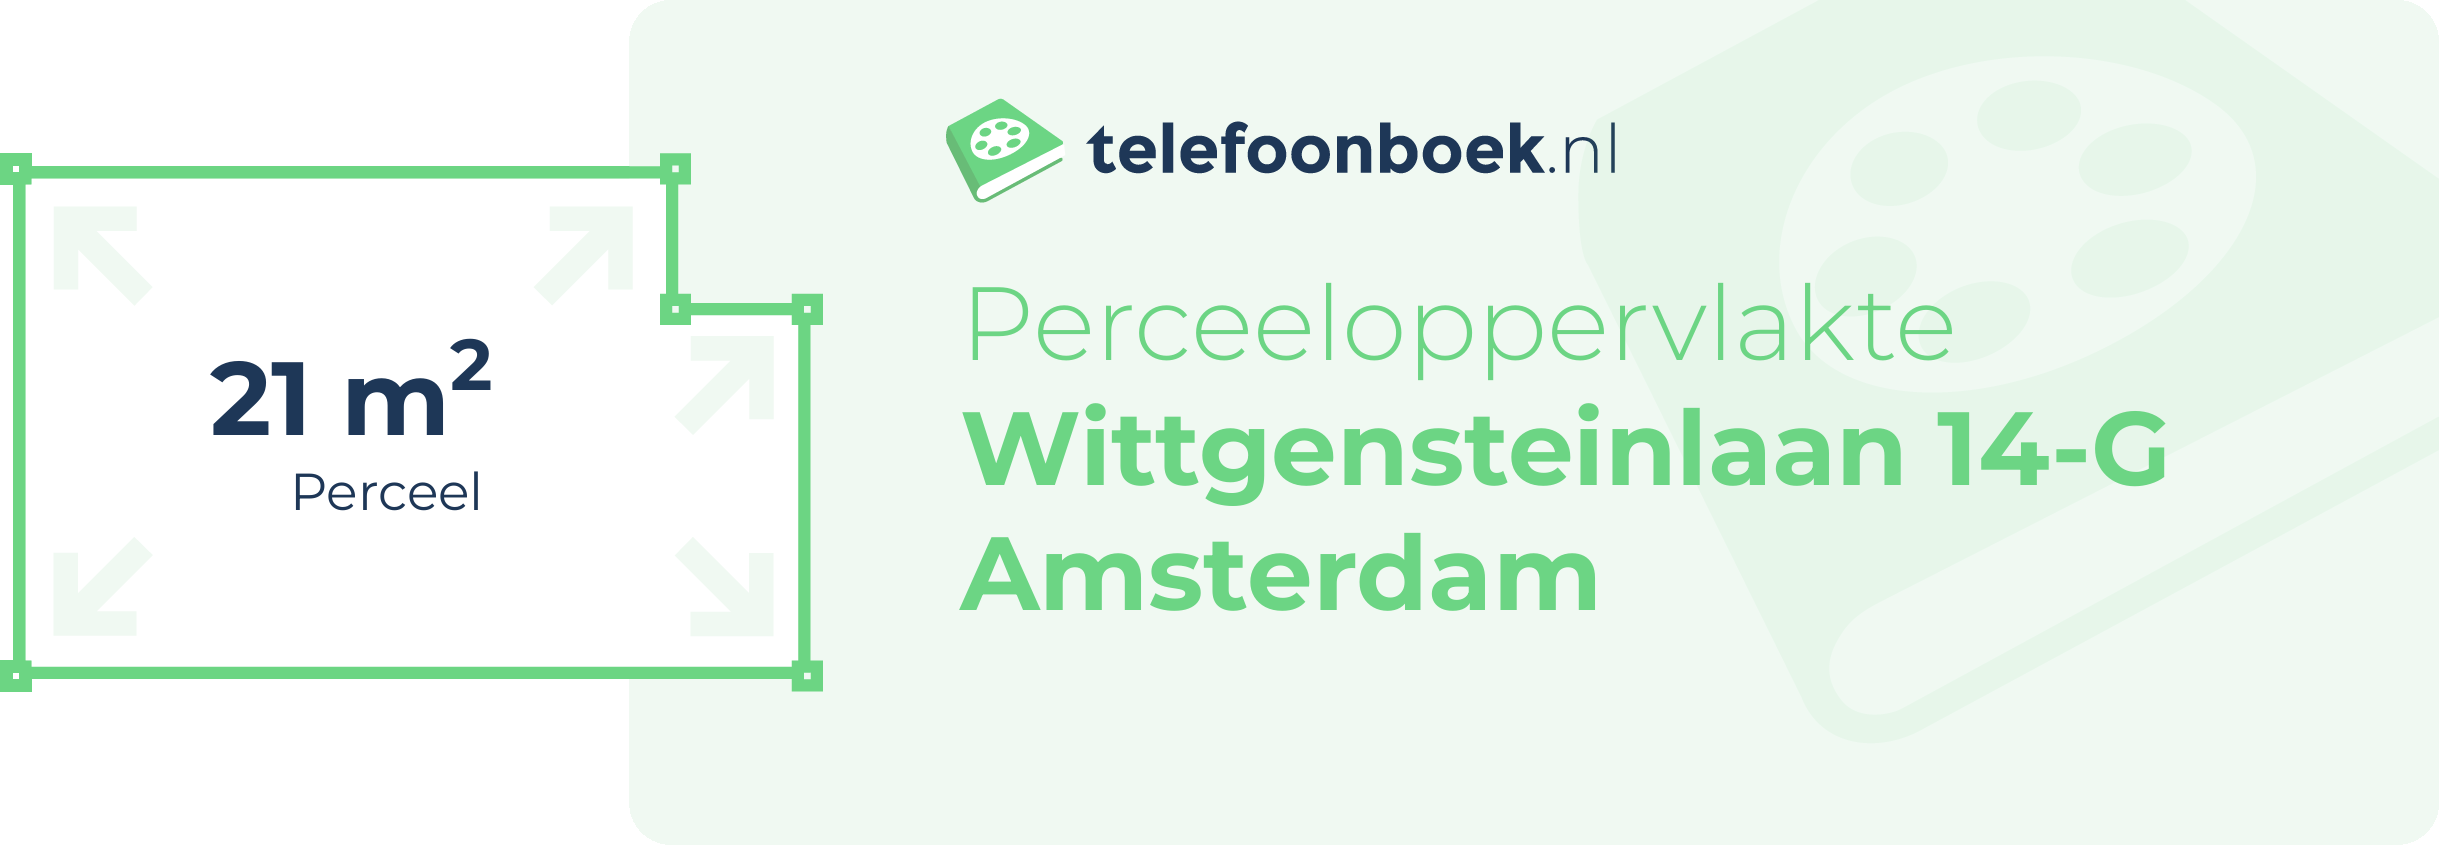 Perceeloppervlakte Wittgensteinlaan 14-G Amsterdam